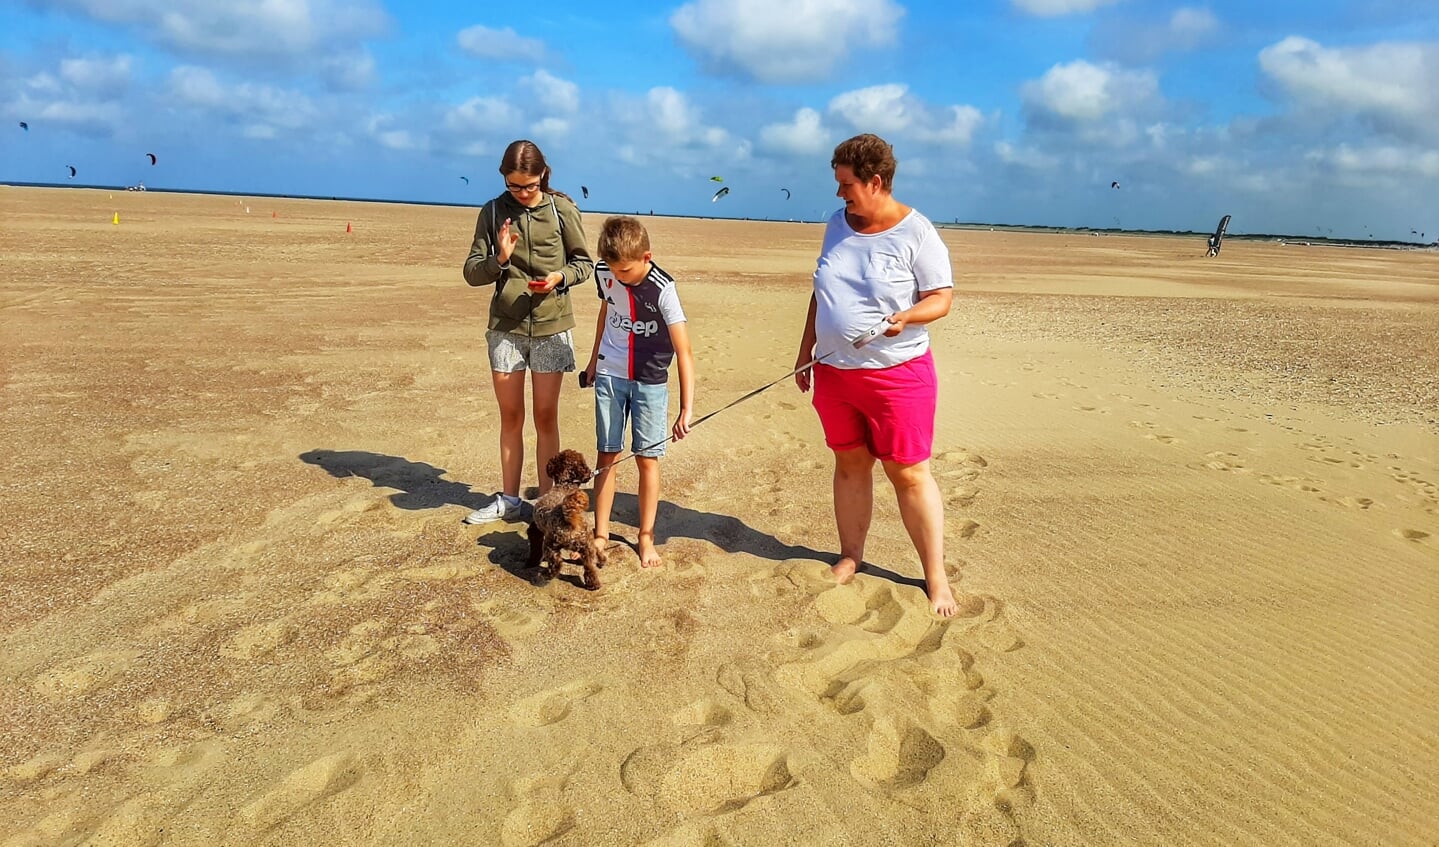 14 augustus gemaakt op het Noordzeestrand in Ouddorp
Barbara ,Anastasia , Jaron en onze hond staan op de foto